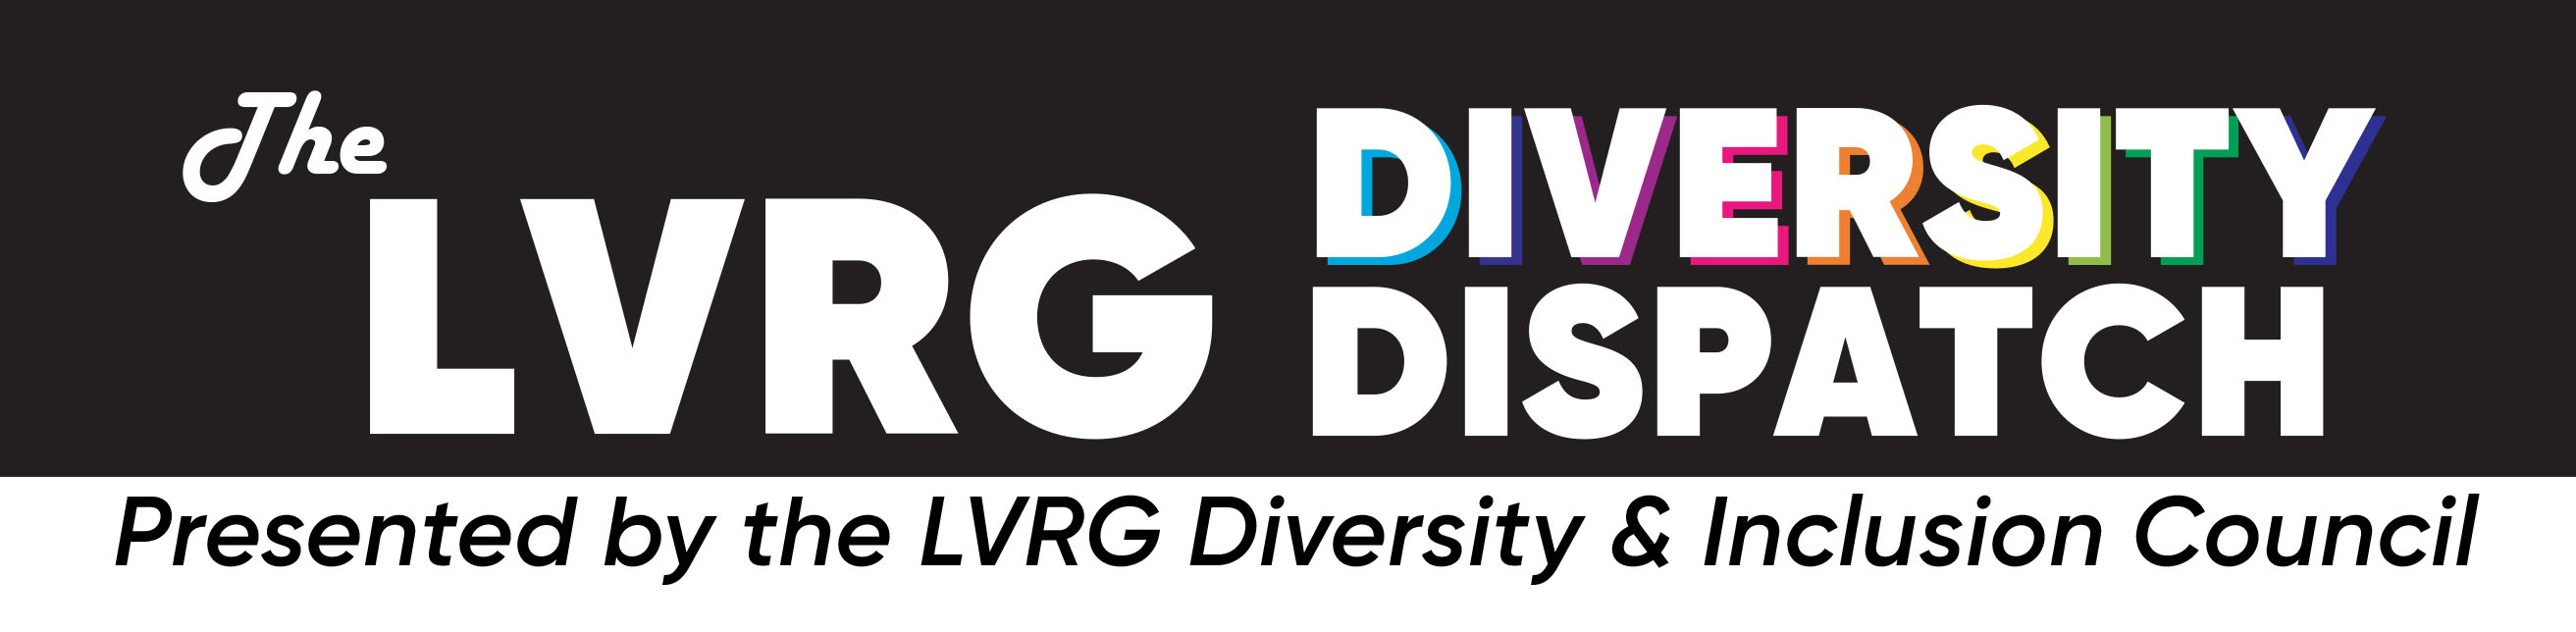 diversity dispatch header v2